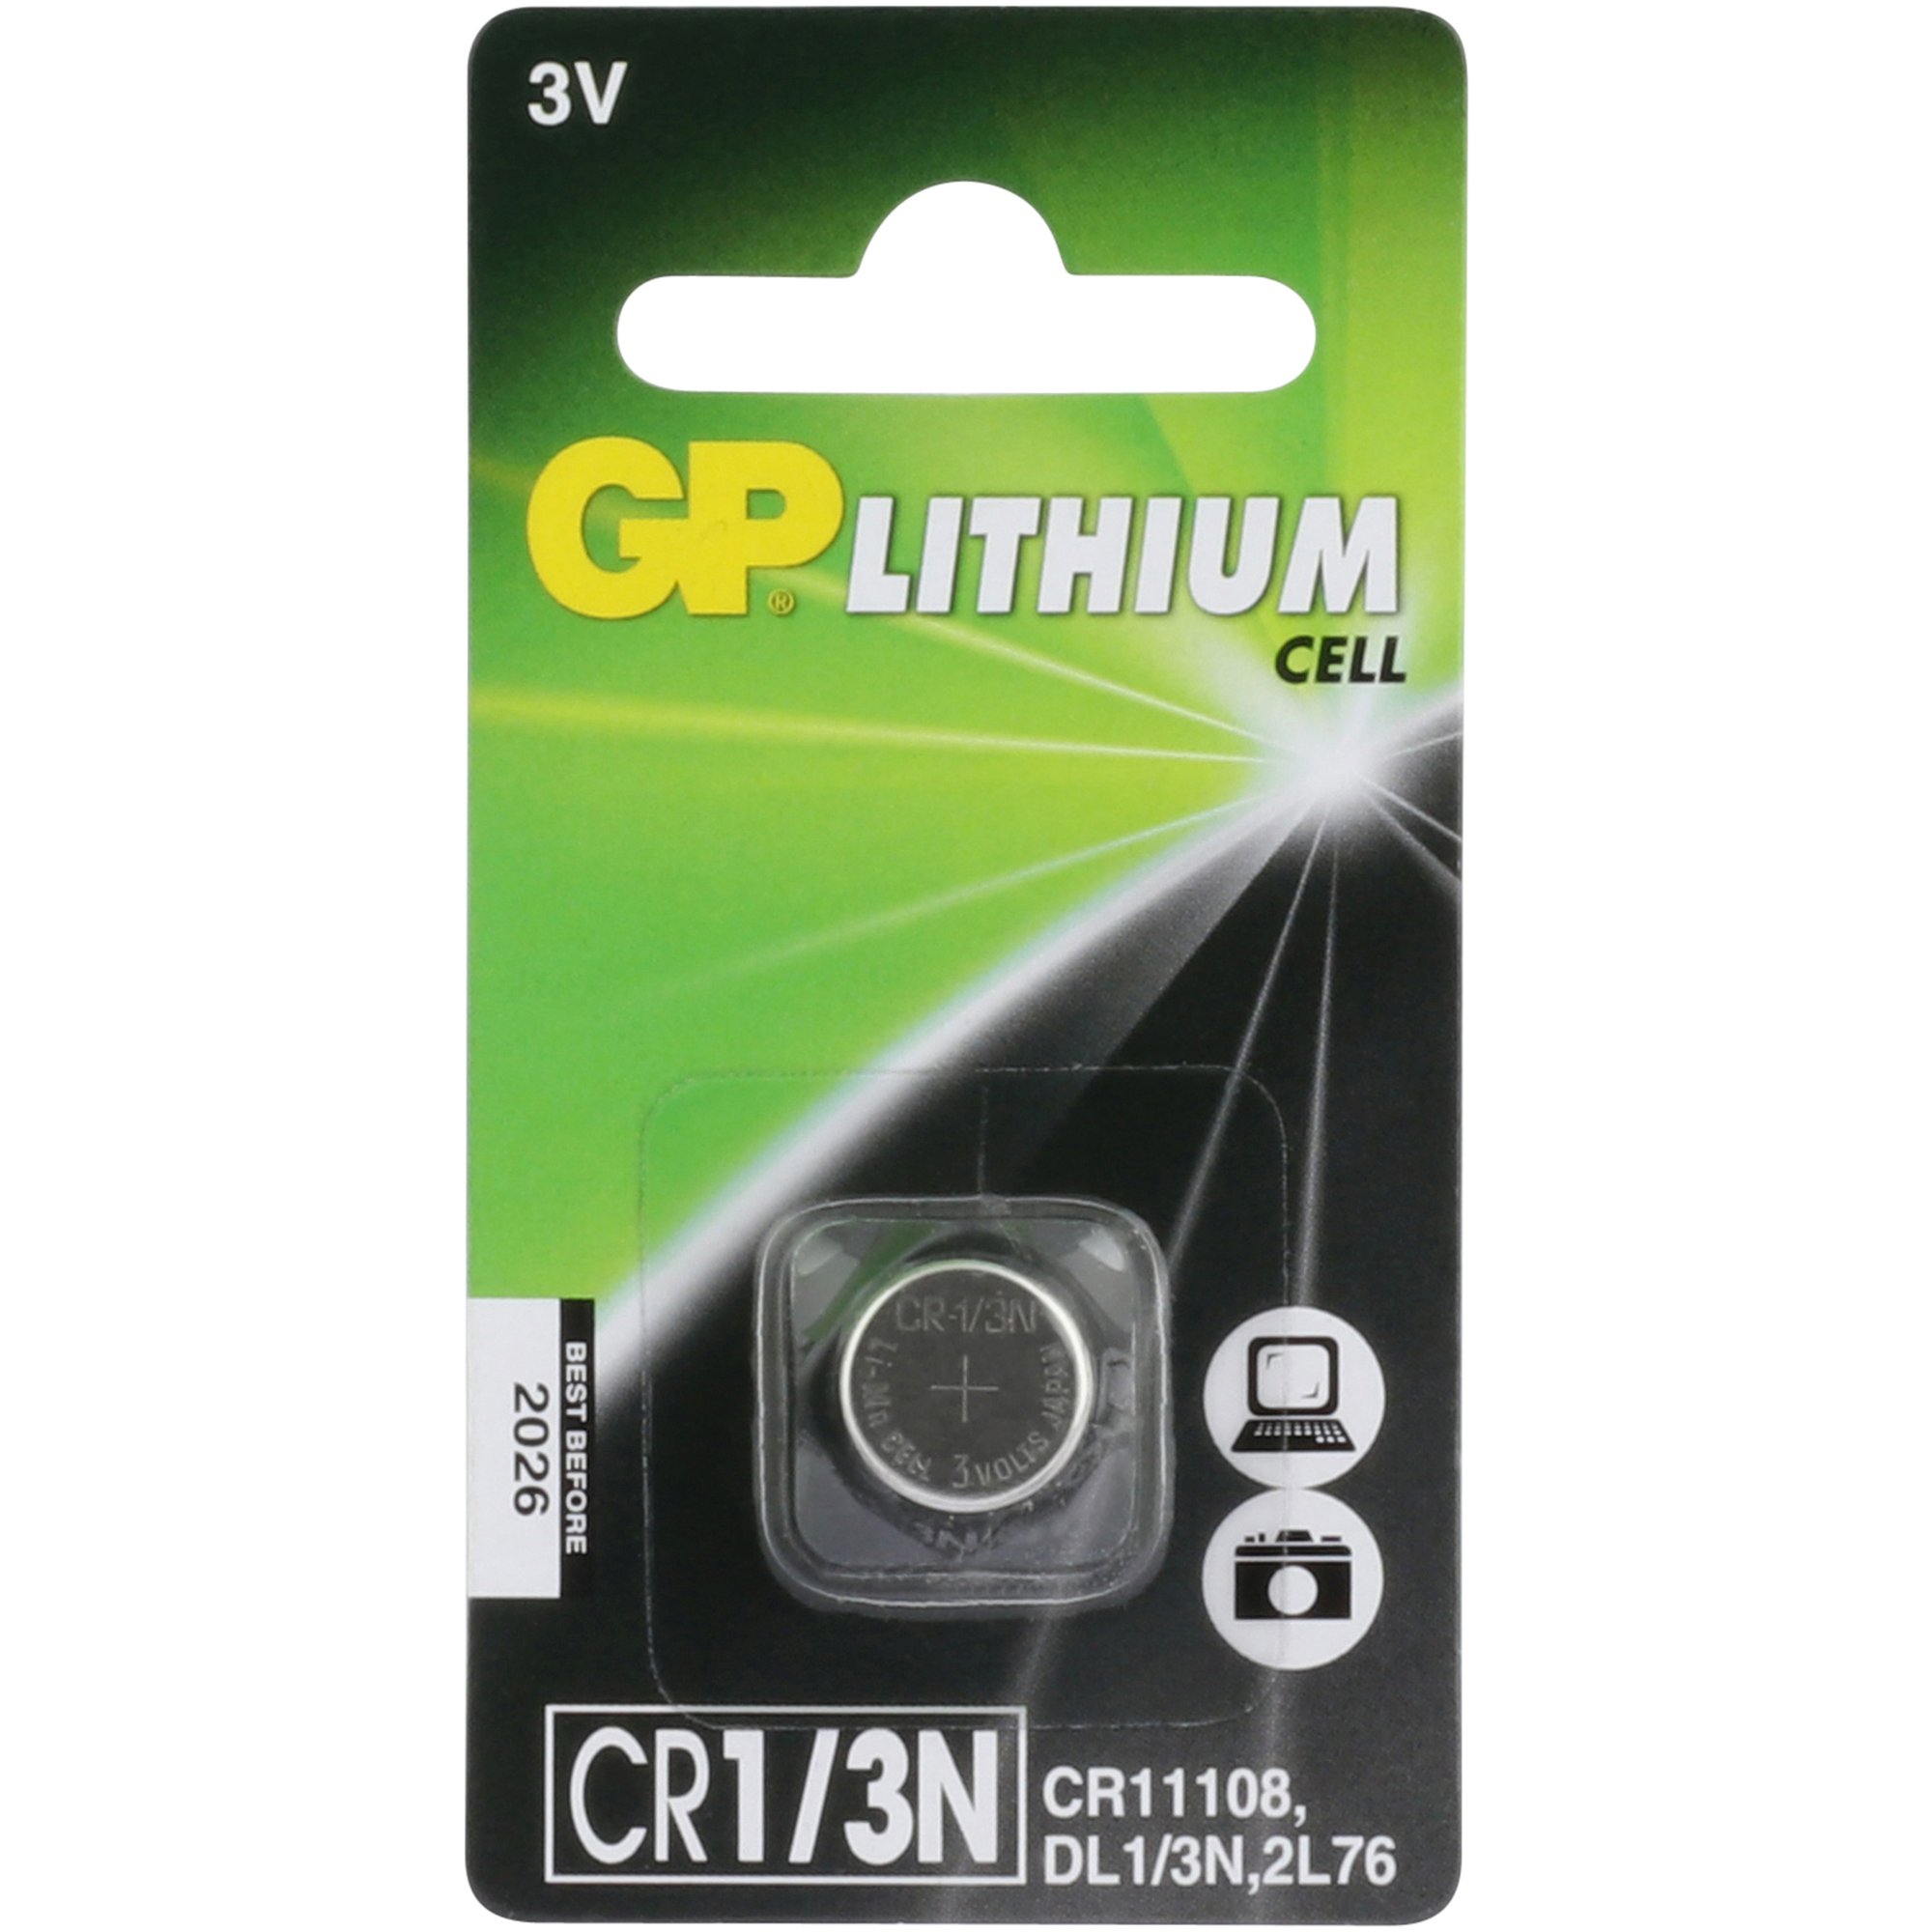 CR1/3N Batterie GP Lithium 3V 1 Stück